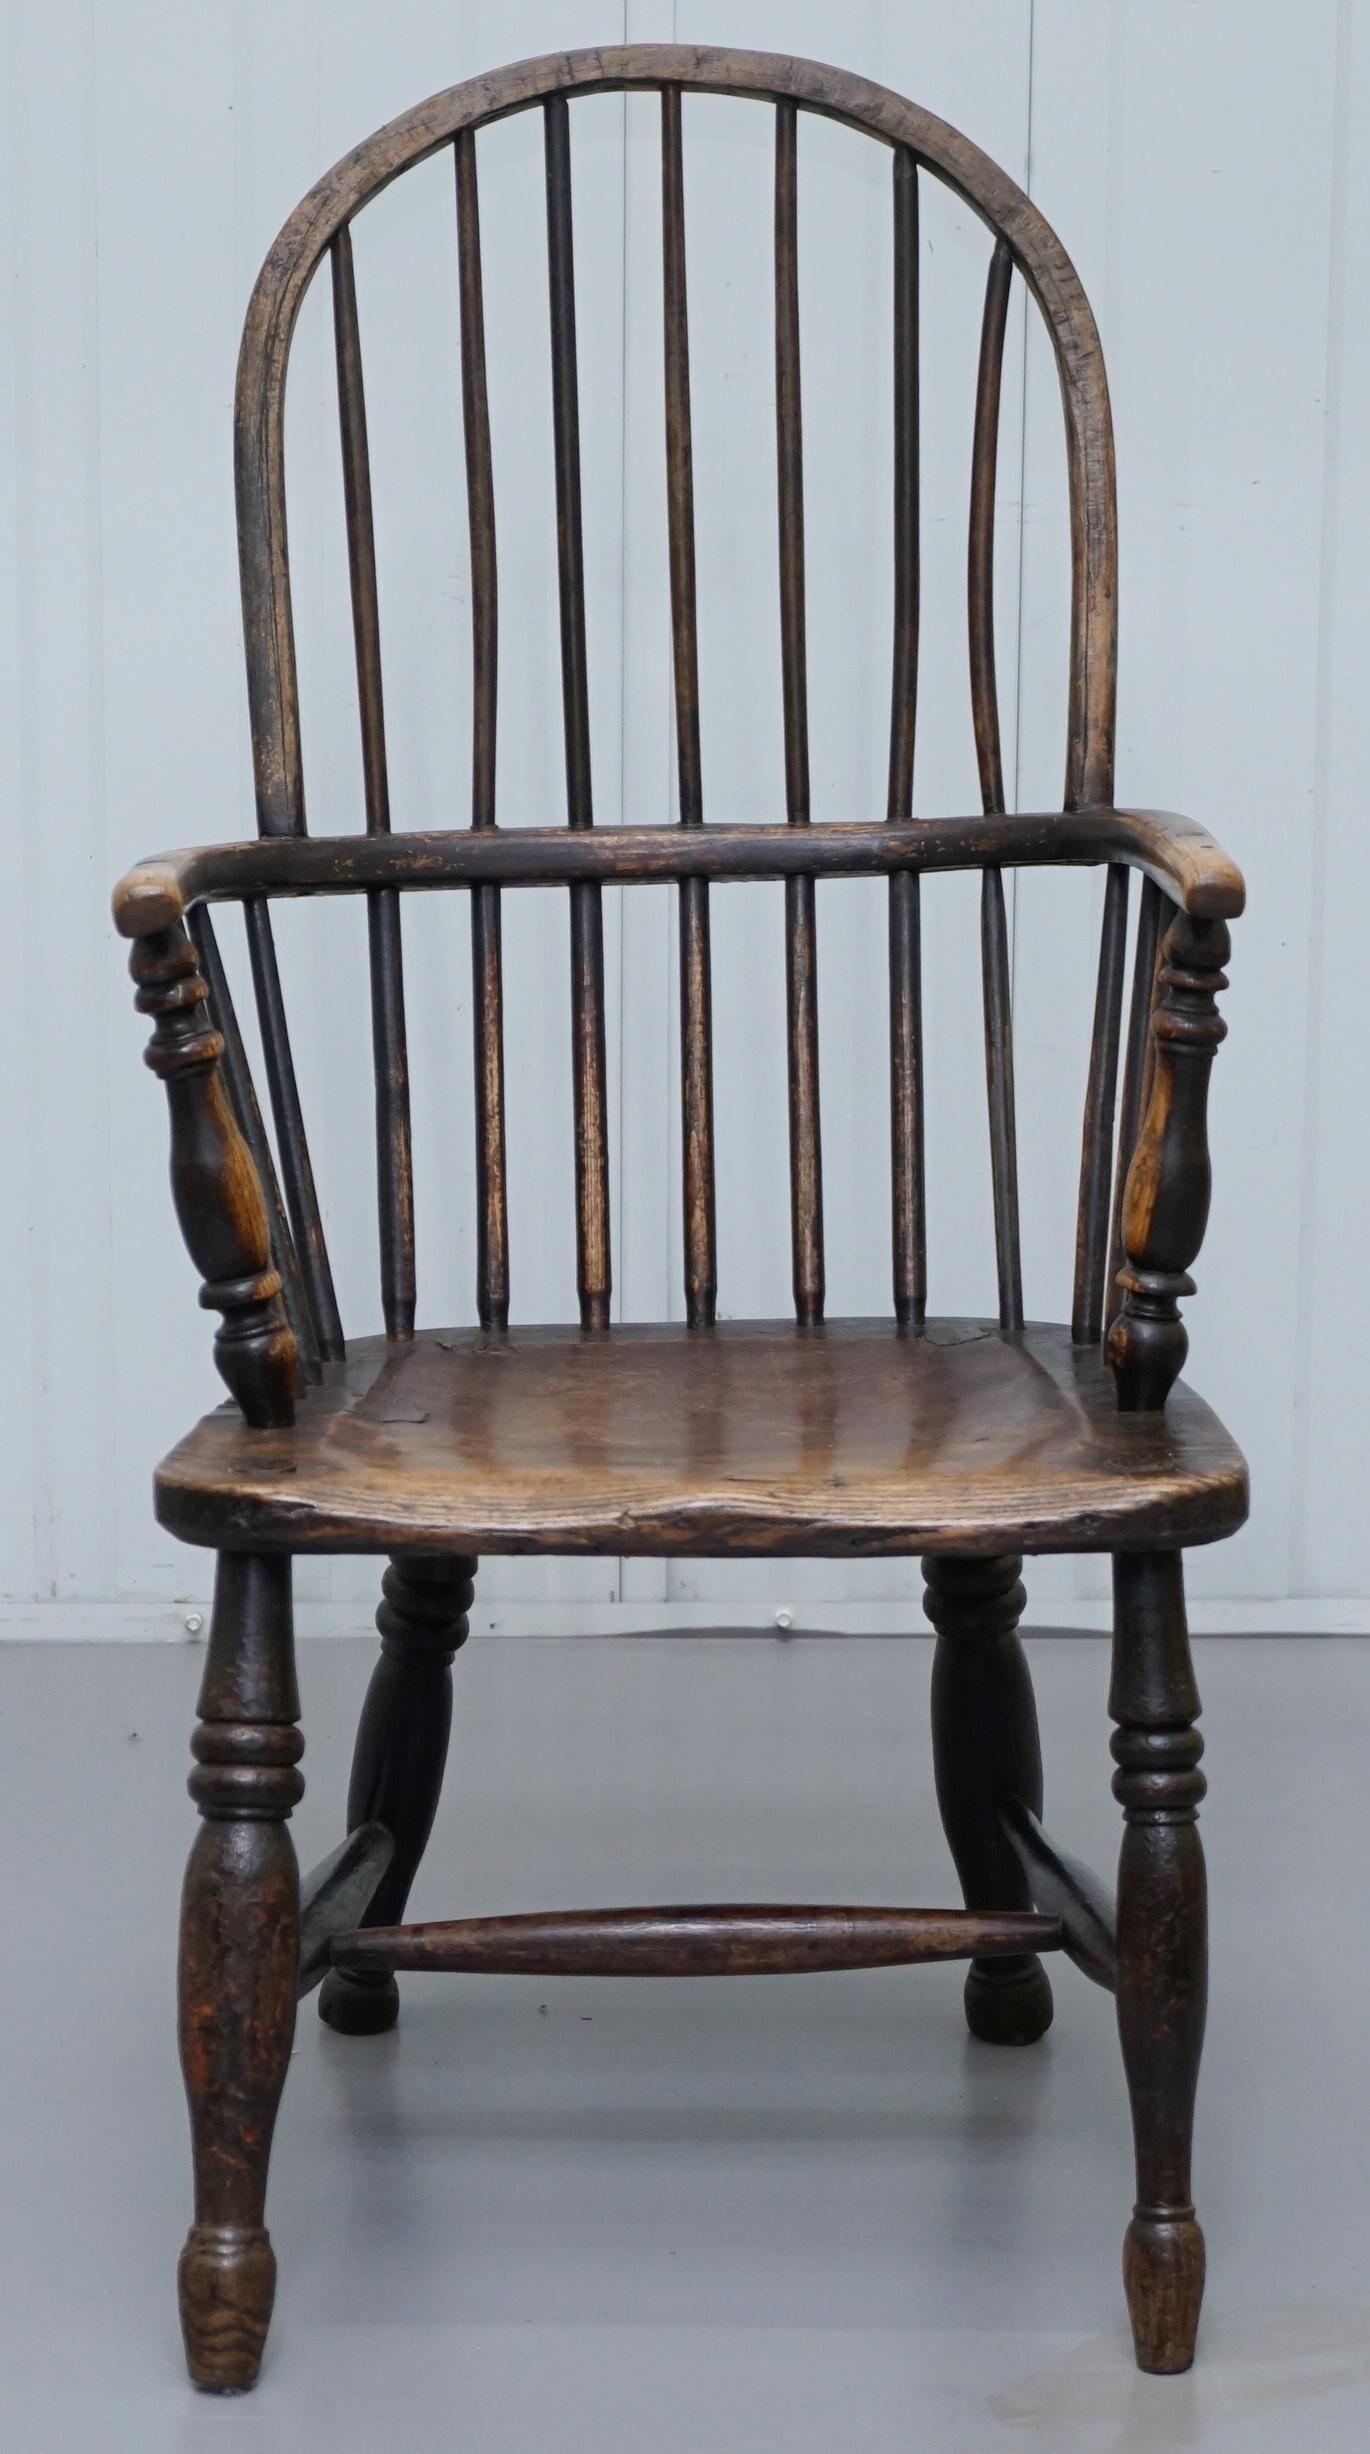 Wir sind erfreut, diese atemberaubende frühen 19. Jahrhundert Ulme Reifen zurück West Land Windsor Sessel mit Spuren von Originalfarbe

Ich habe zwei weitere Paare dieser Stühle unter meinen anderen Artikeln aufgeführt, die kleiner sind

Ein